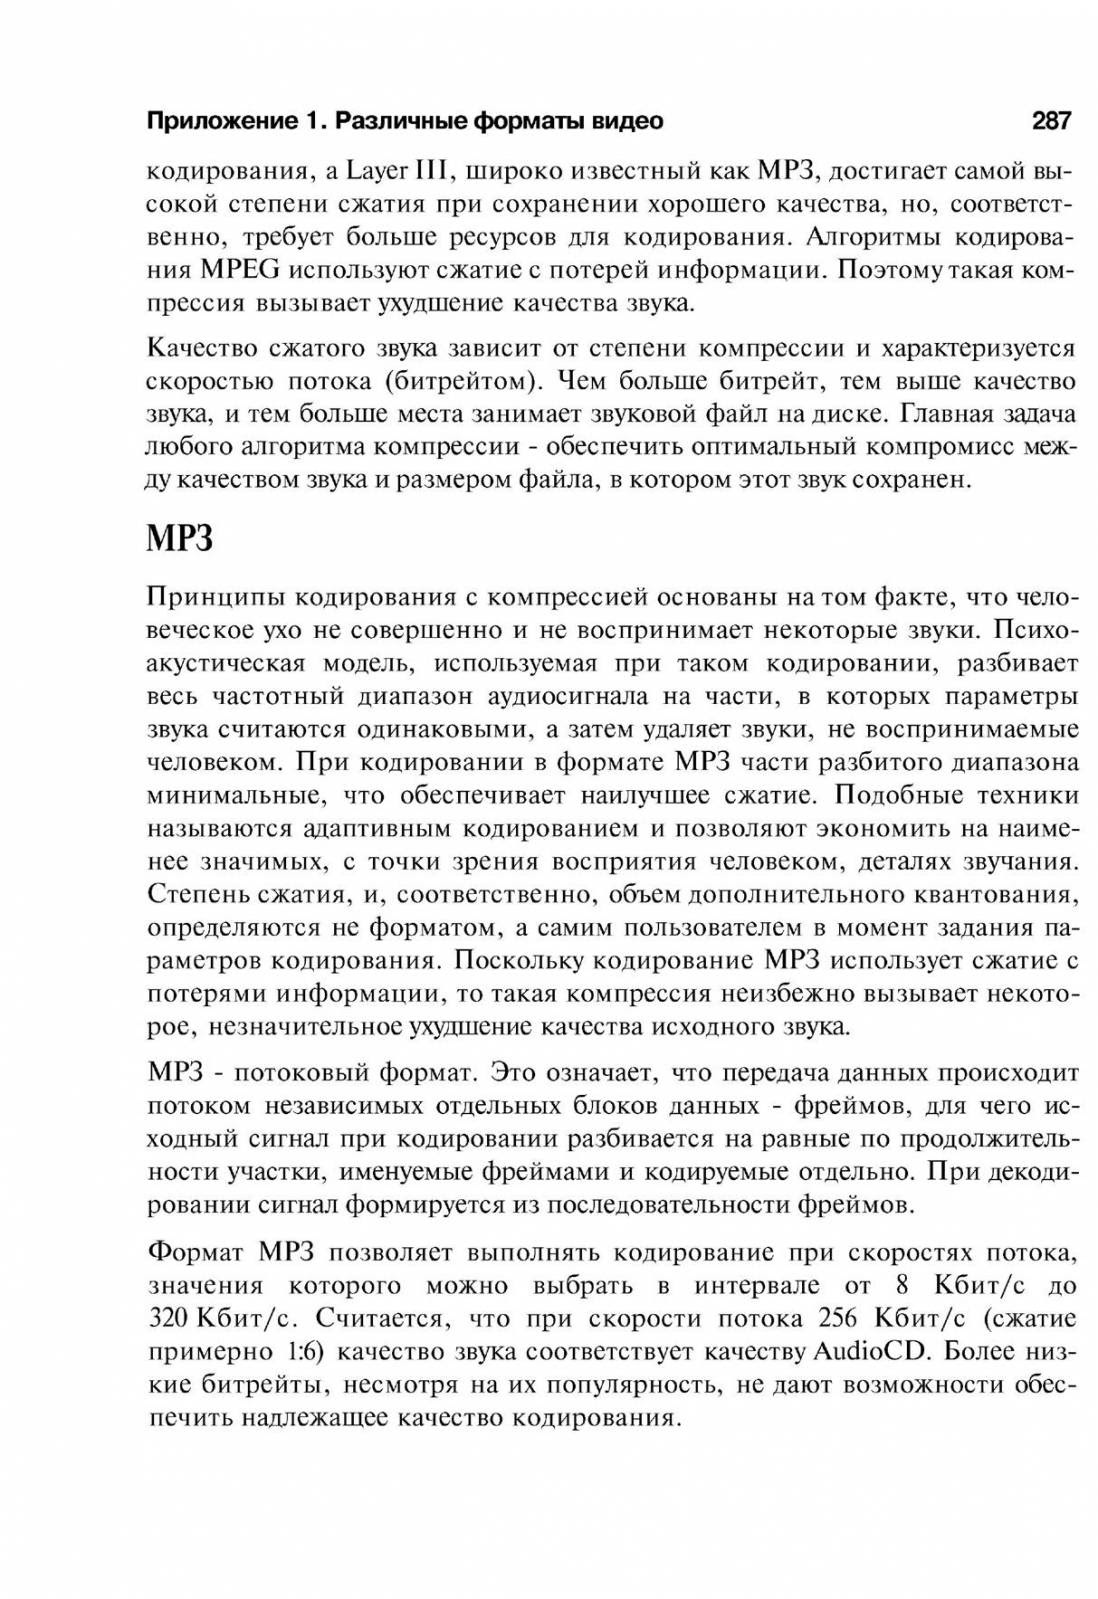 http://redaktori-uroki.3dn.ru/_ph/14/213397314.jpg